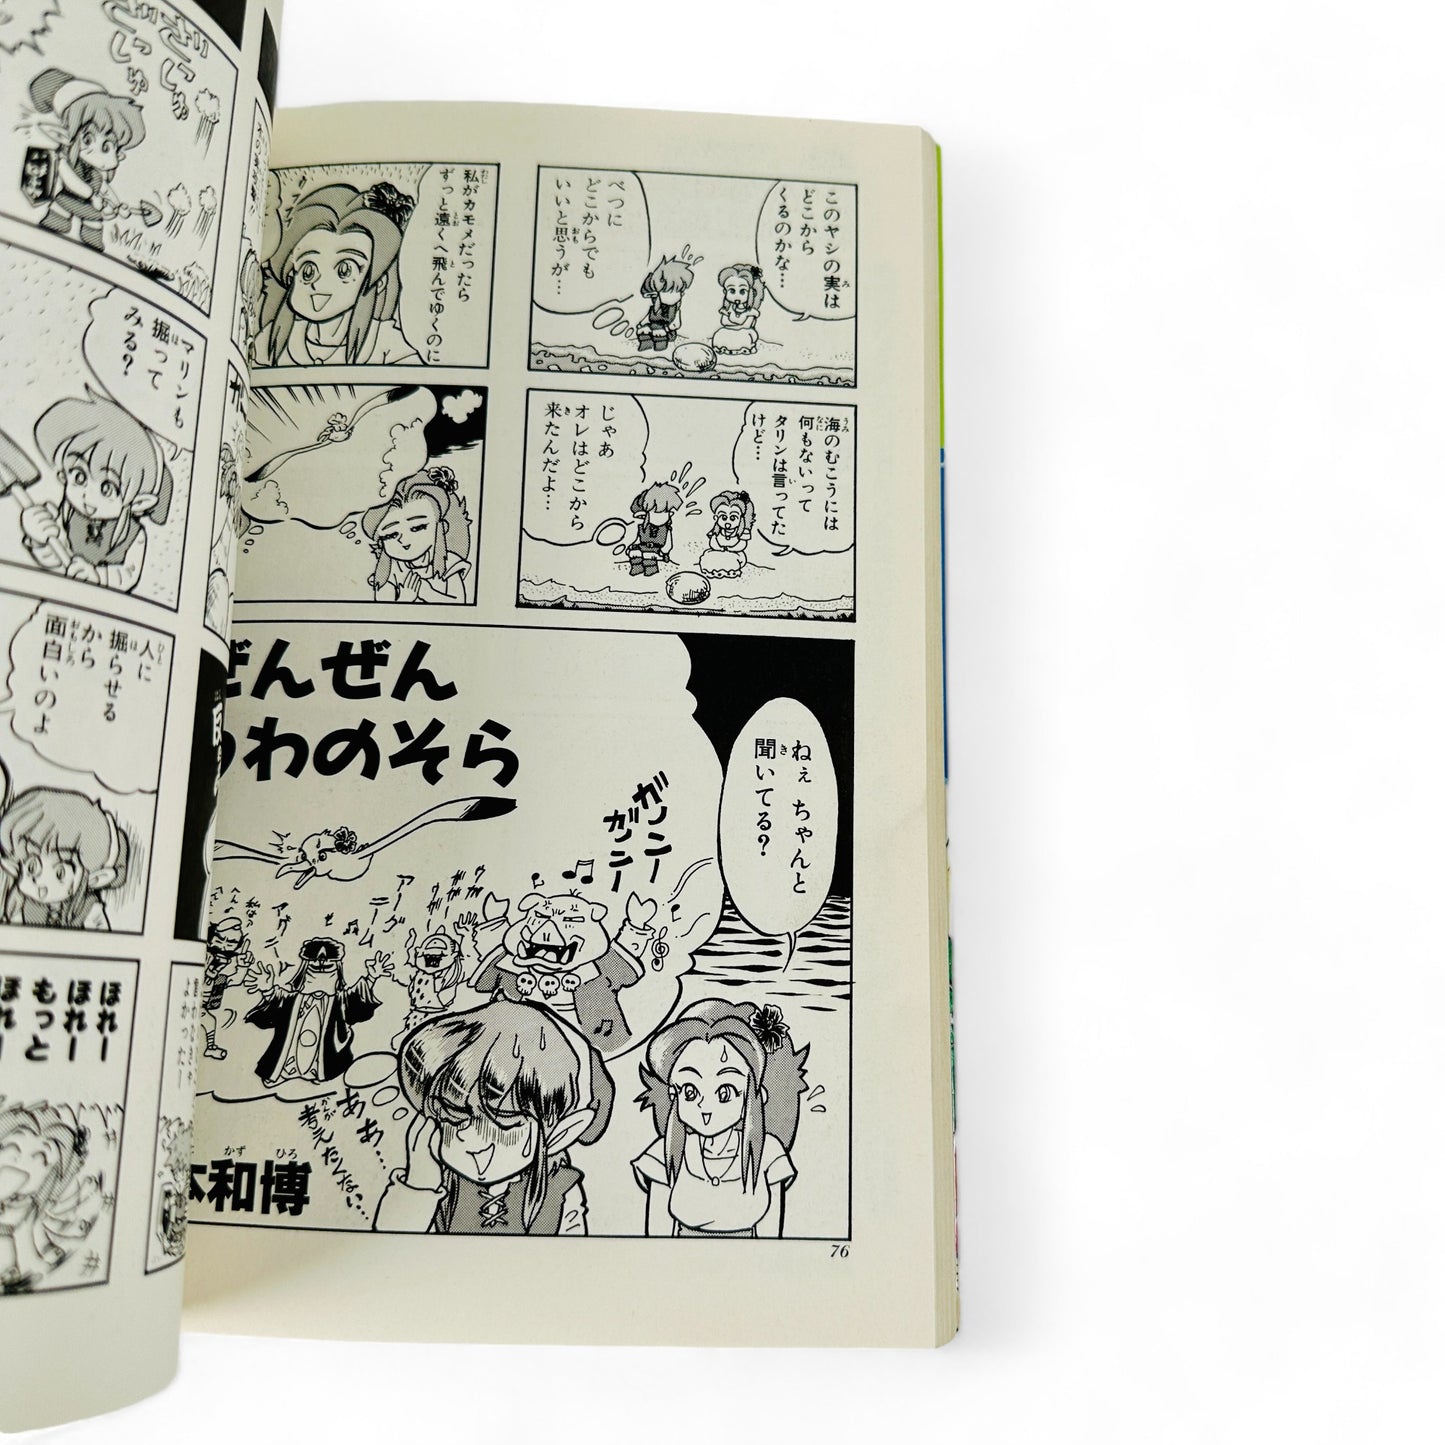 The Legend of Zelda 5 (Manga en 4 cases)